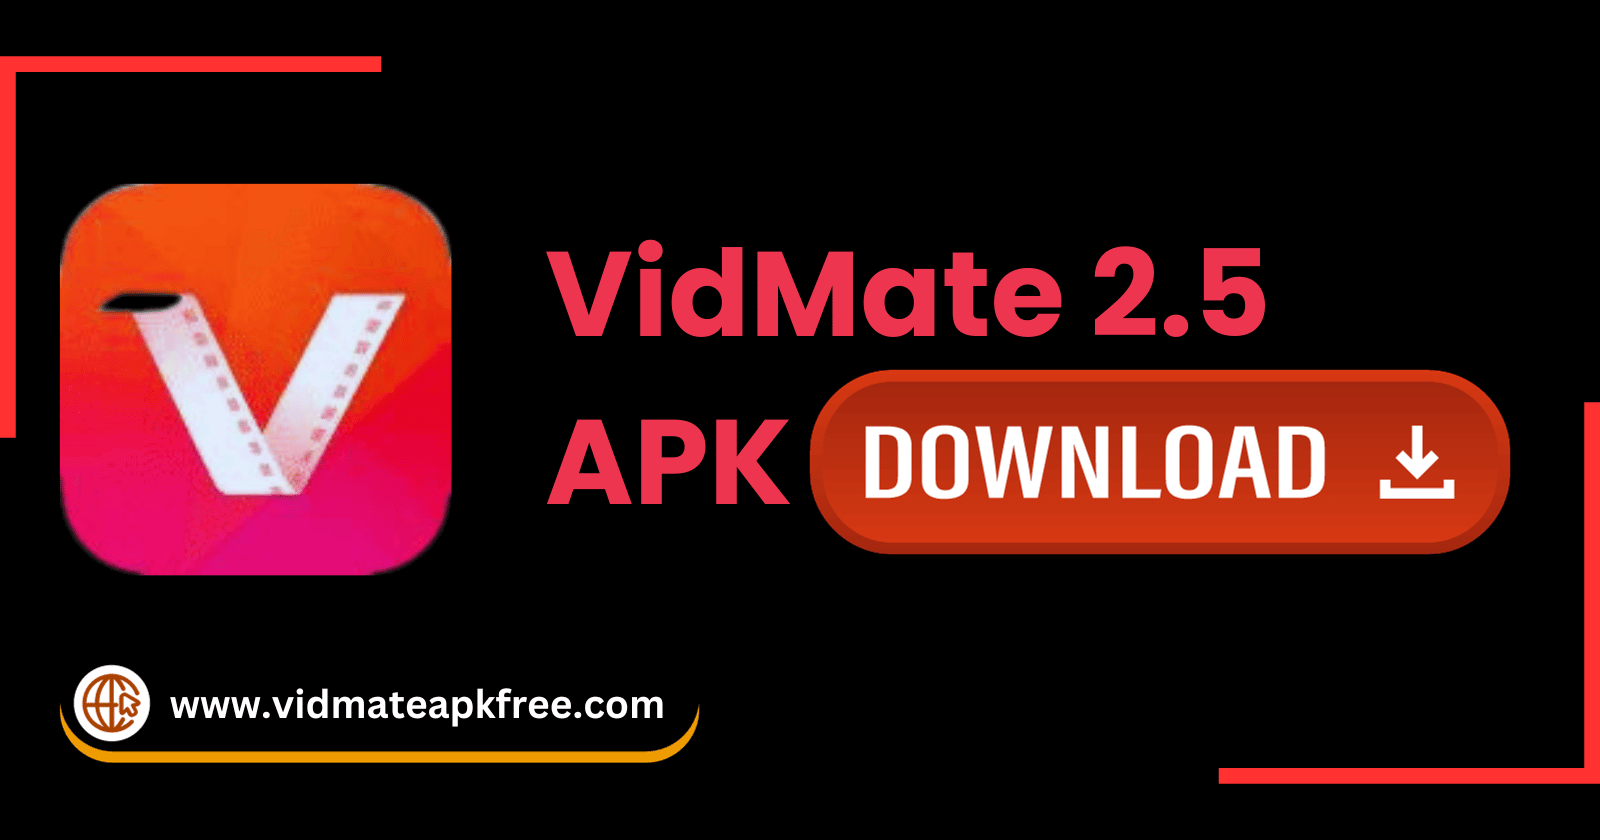 Old VidMate 2.5 APK Download